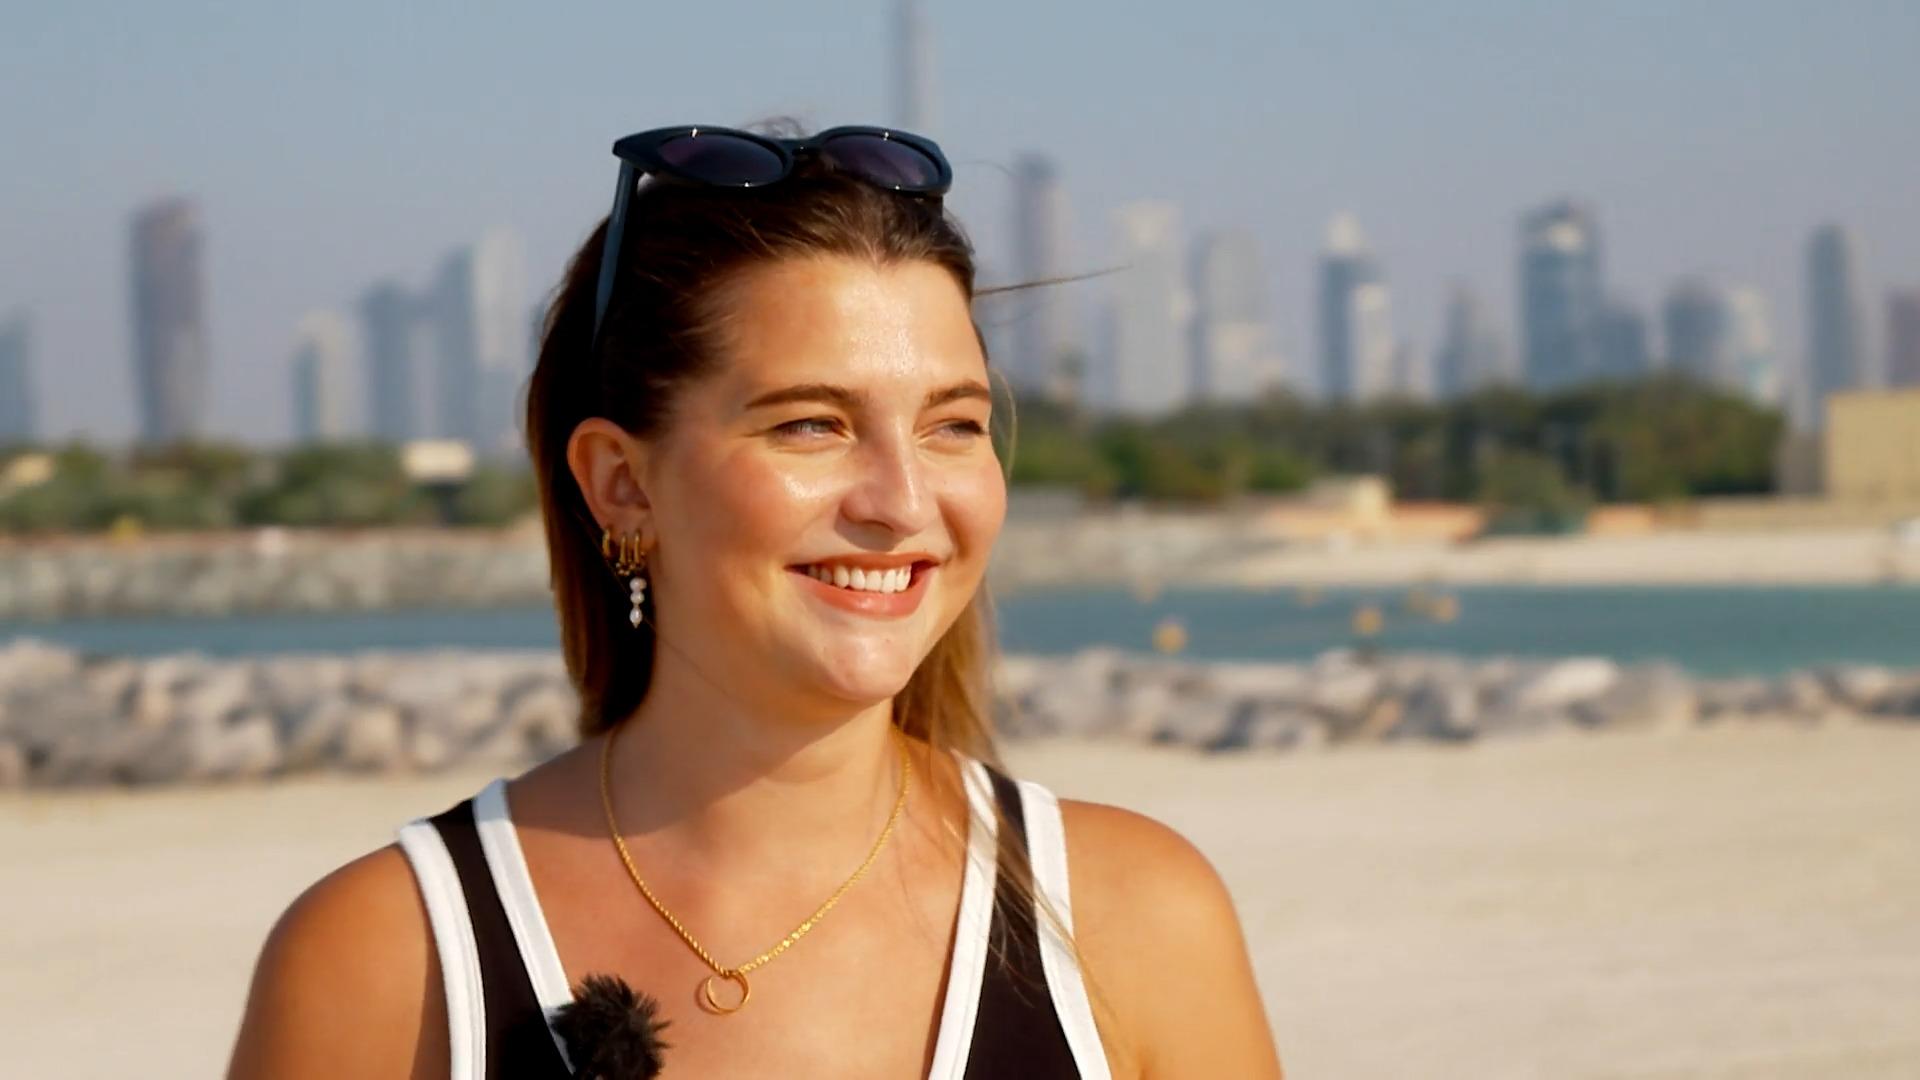 Ihr rosiger Alltag in Dubai hat auch seine Schattenseiten Fata Hasanovic offen und ehrlich wie nie